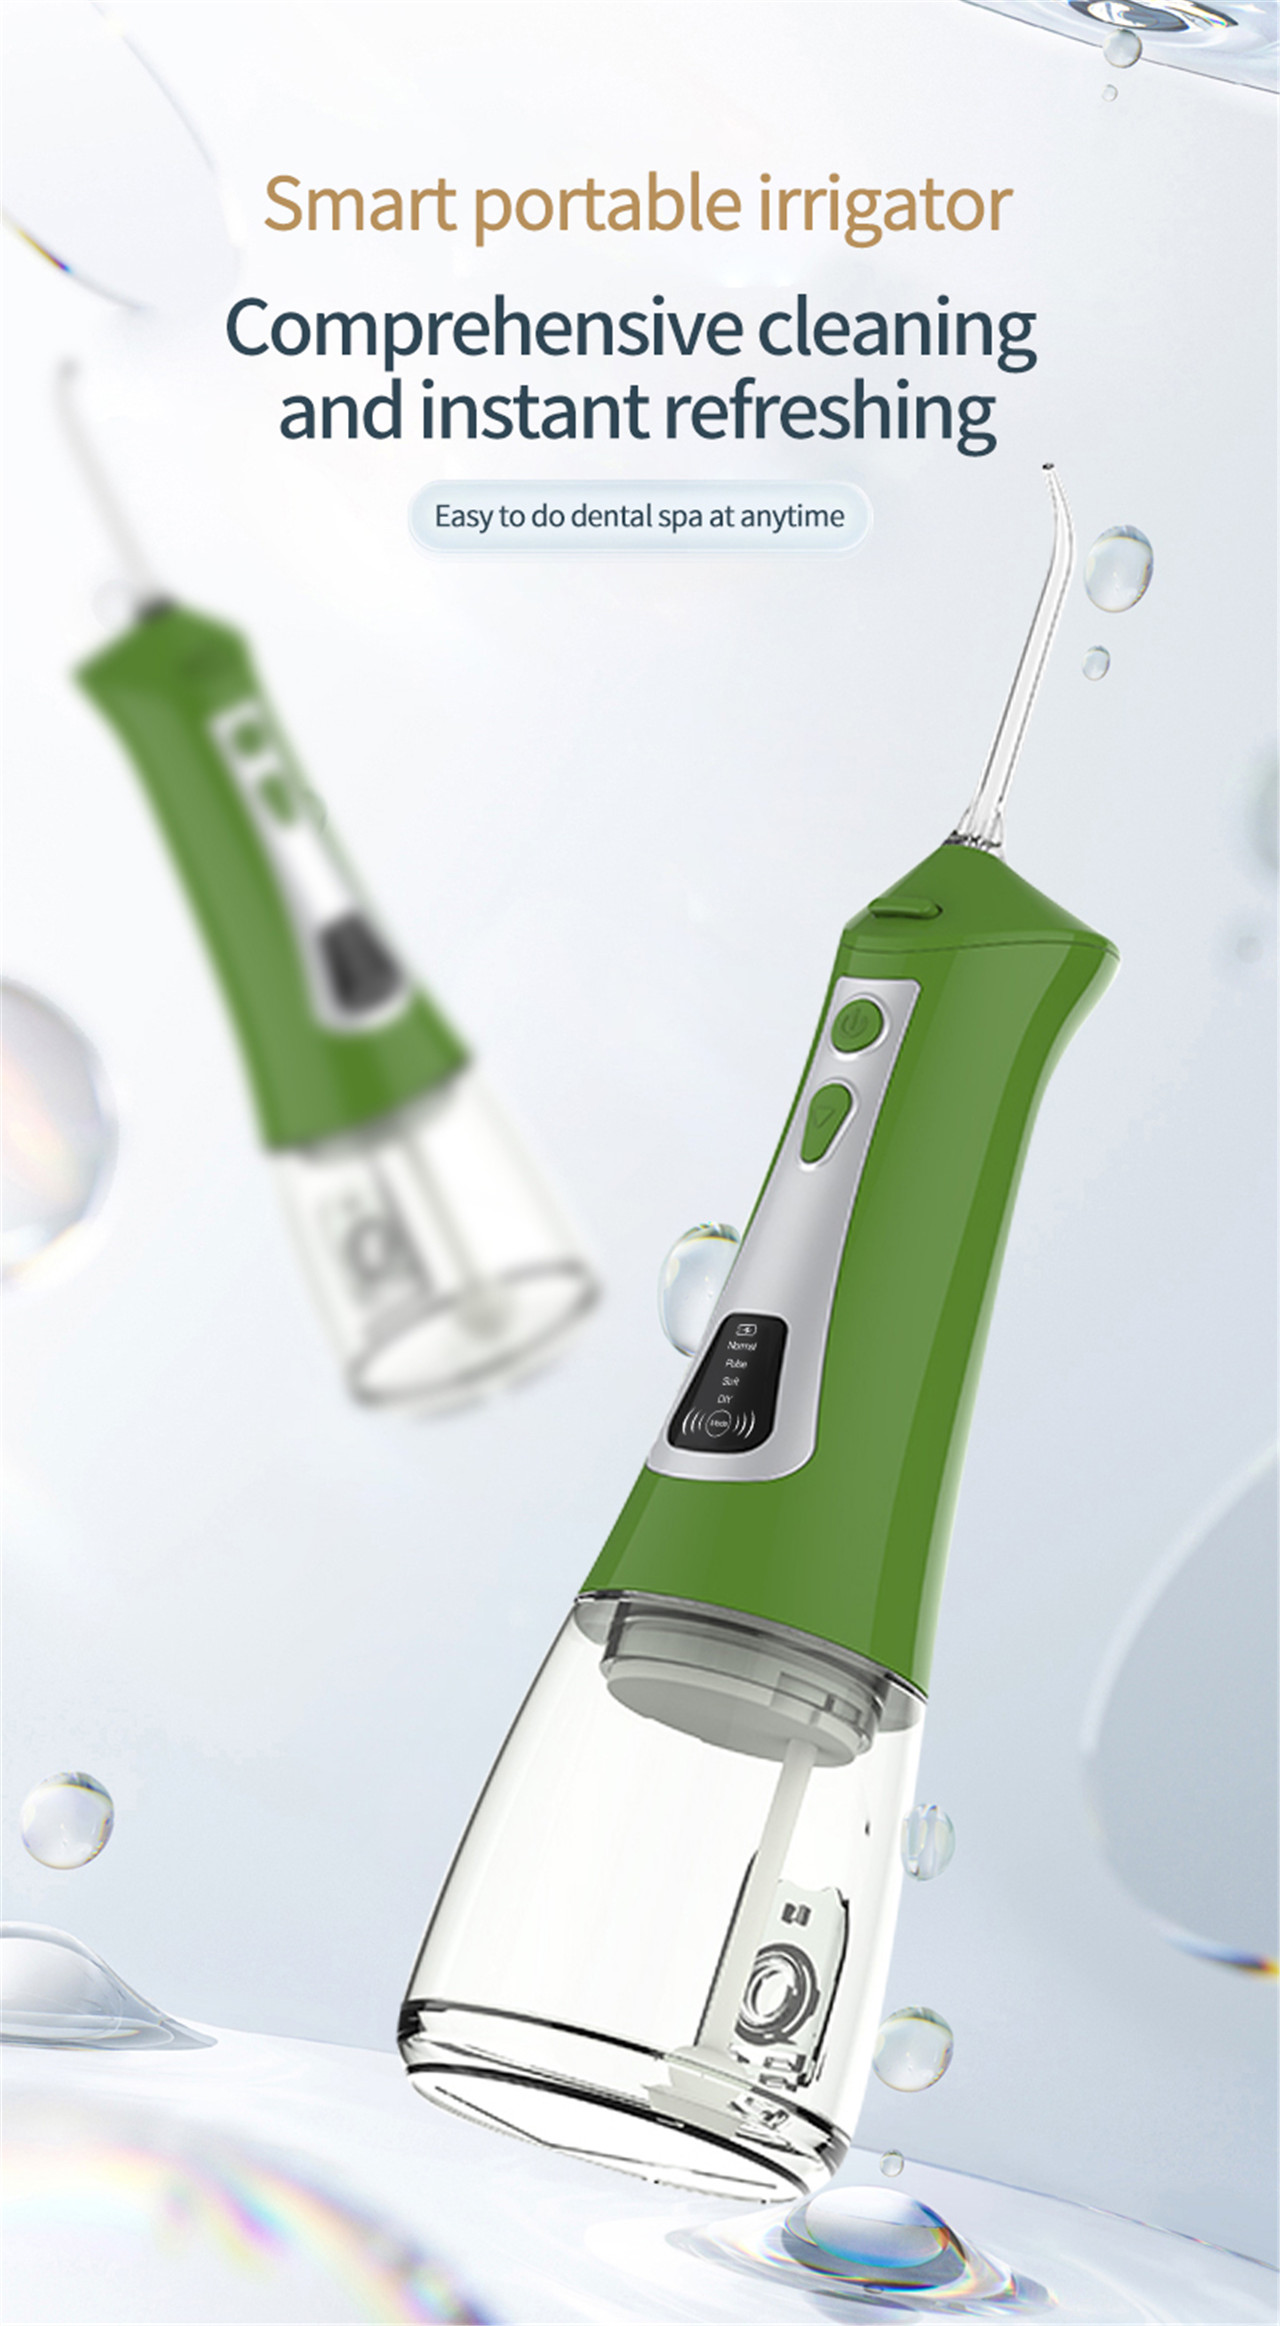 OLED დისპლეი ორალური სარწყავი წყლის ამომრჩევი კბილების გასათეთრებლად (1)